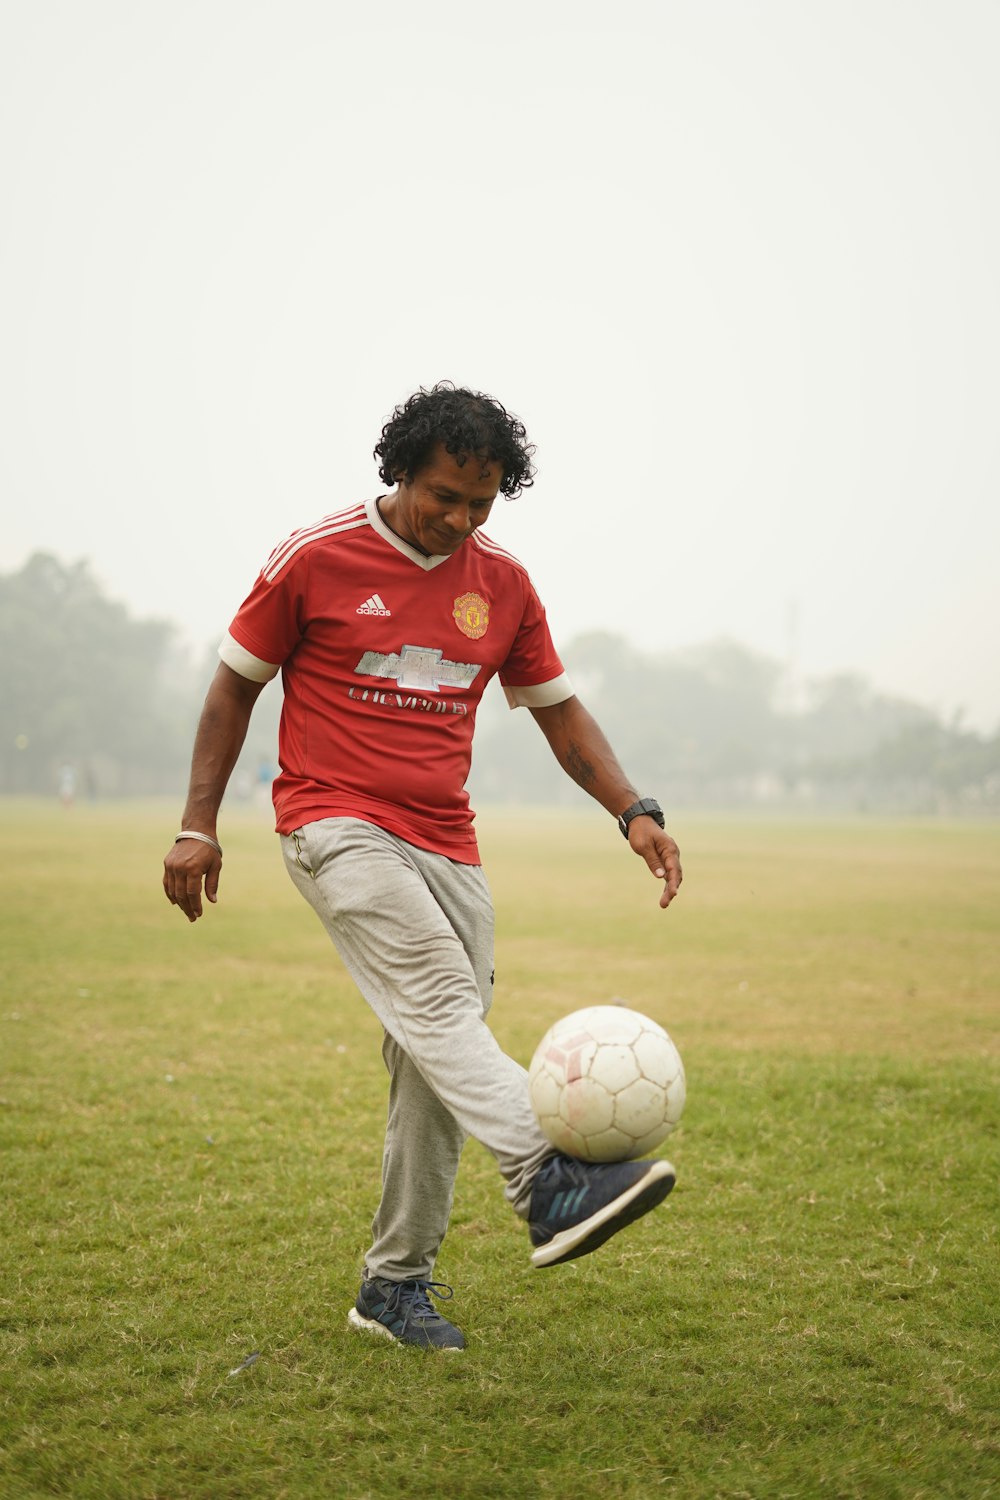 hombre en camiseta de fútbol roja y blanca pateando la pelota de fútbol en el campo de hierba verde durante el día